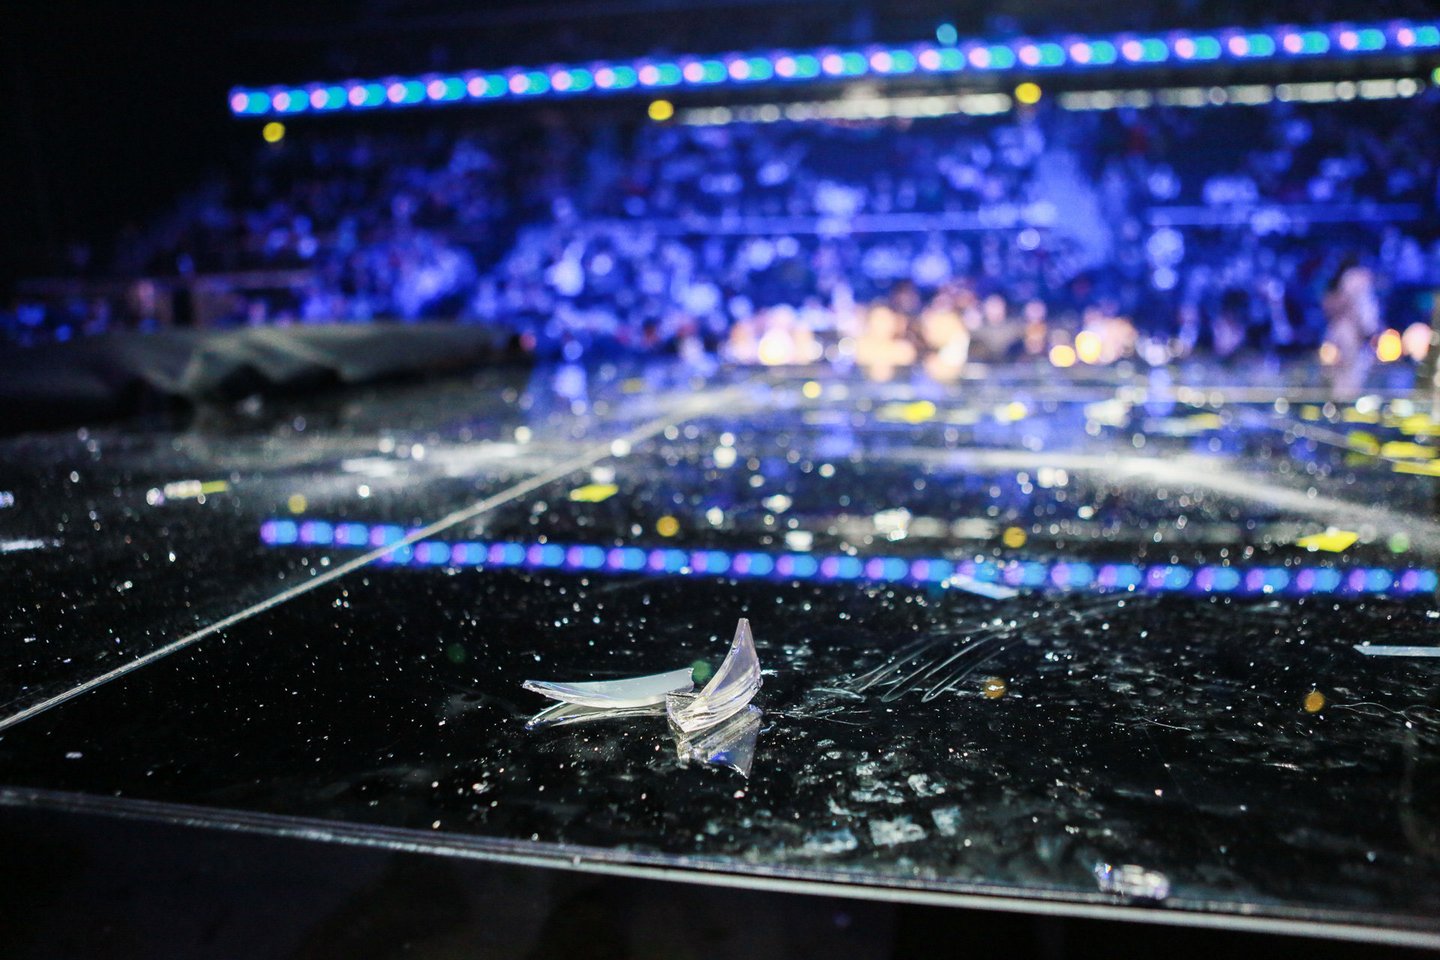  Renginio metu nukritus lempai ant scenos pažiro stiklo šukės.<br> G.Bitvinsko nuotr.